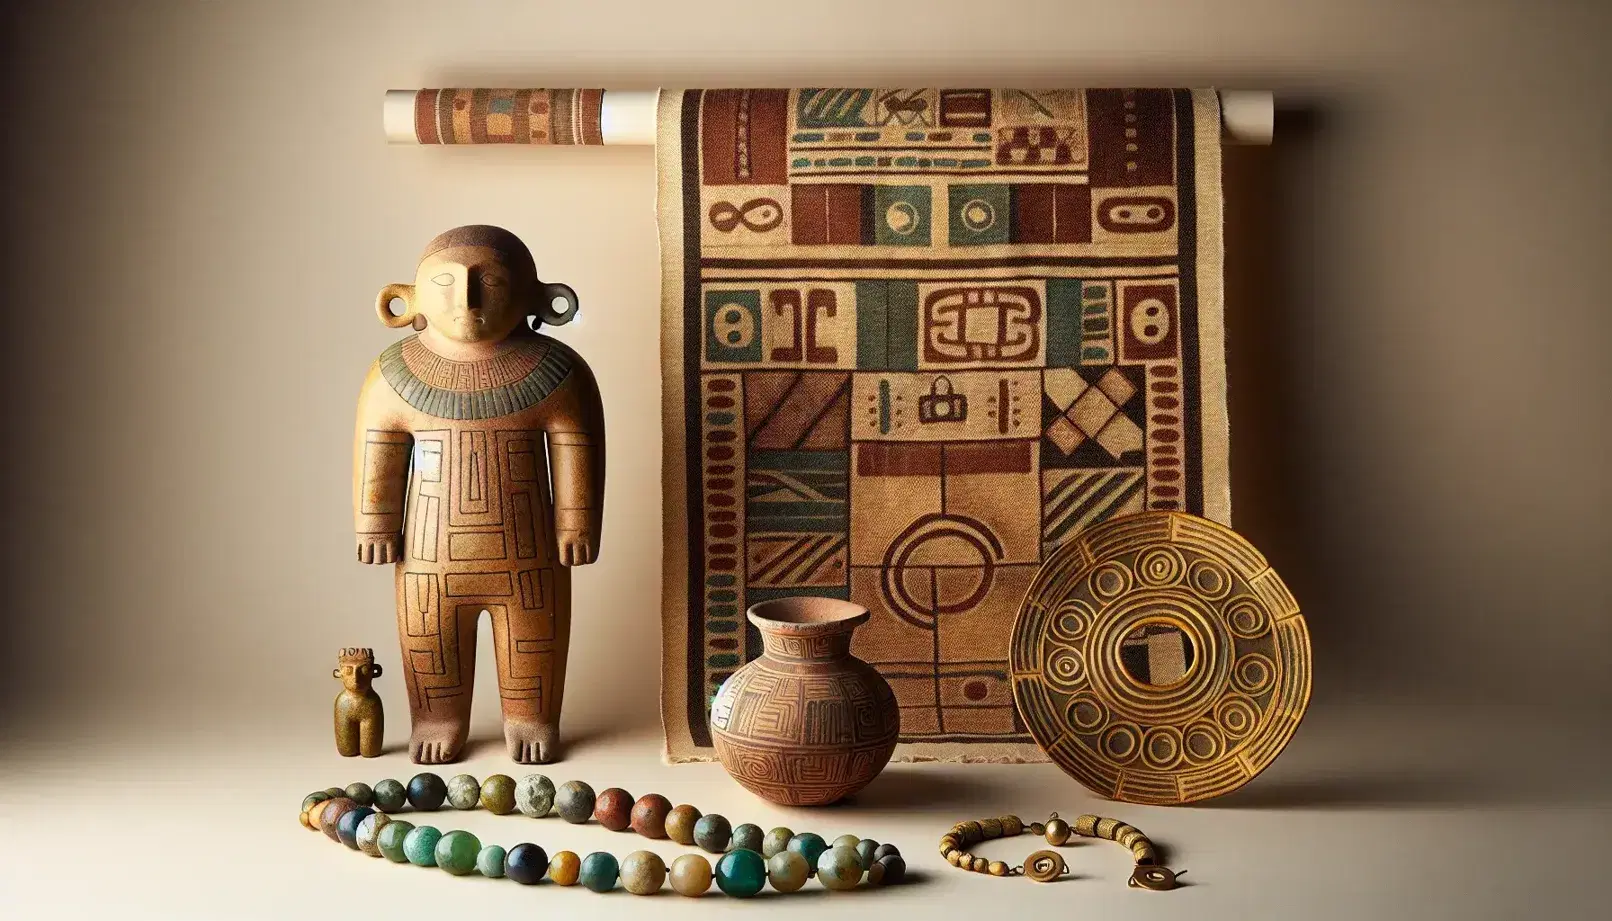 Colección de artefactos precolombinos con figura cerámica antropomórfica, collar de cuentas de colores, vasija decorada y textil de fibras naturales sobre fondo neutro.